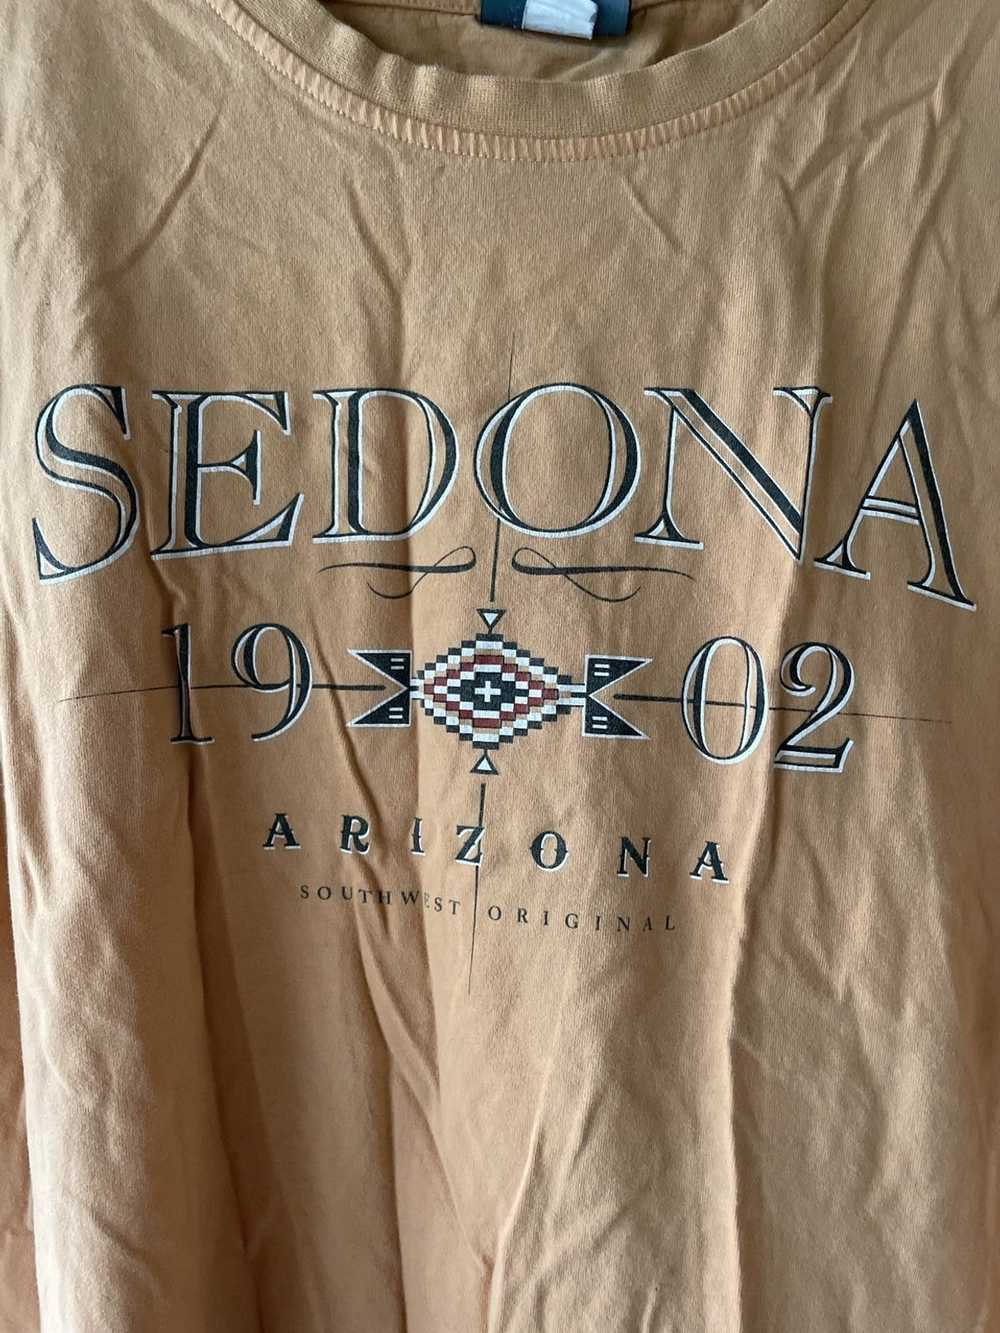 Vintage Vintage Sedona Arizona Tee - image 2